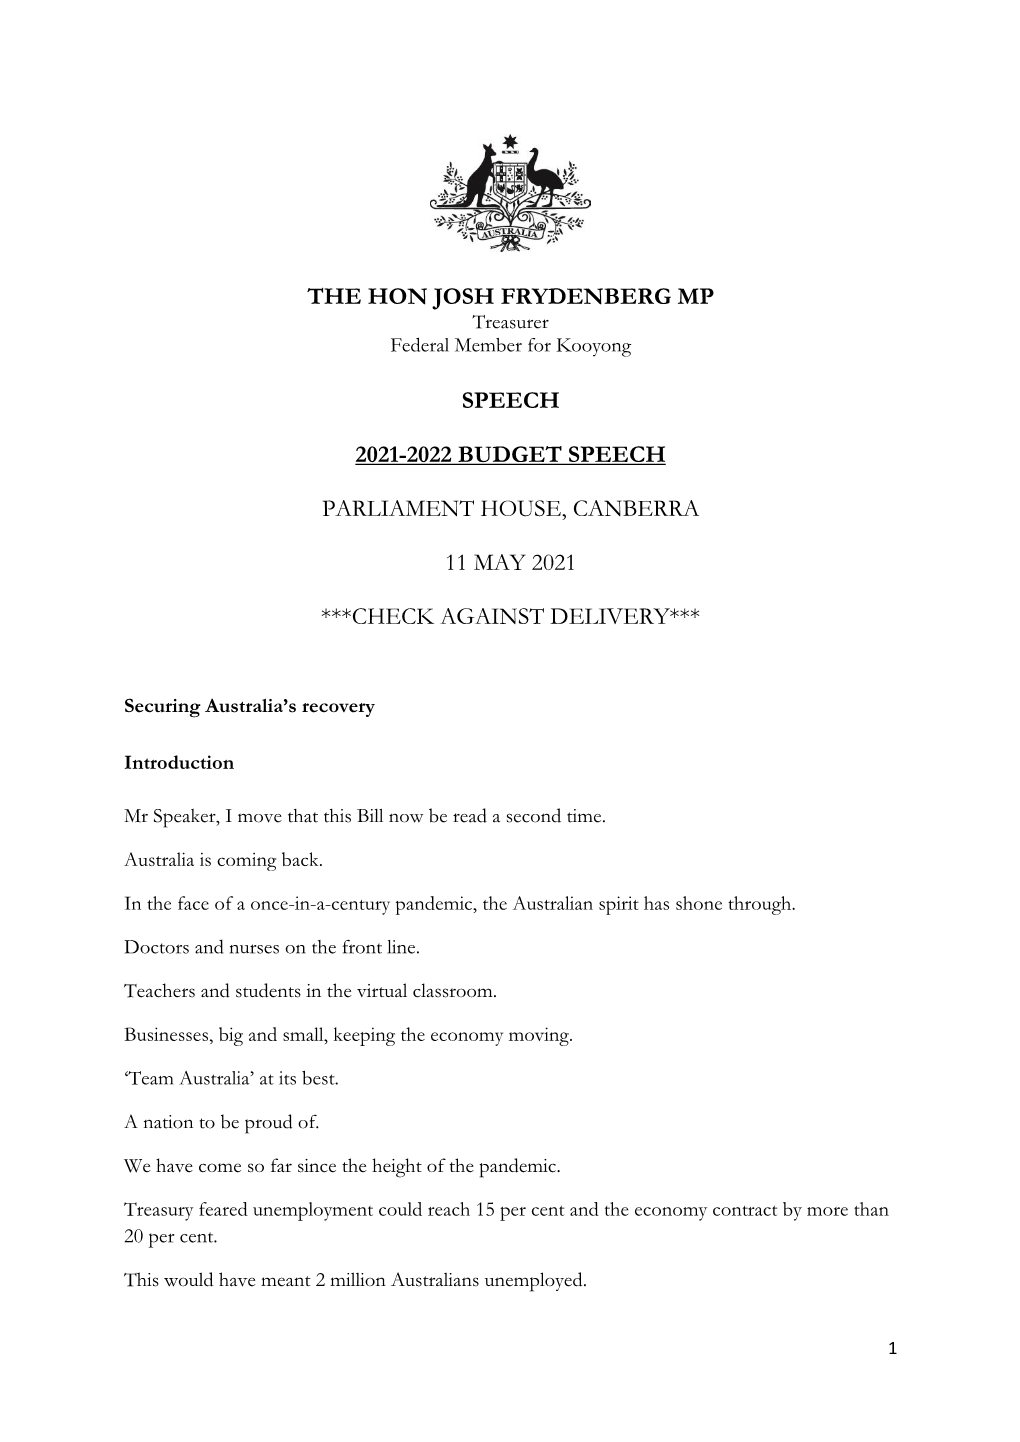 The Hon Josh Frydenberg Mp Speech 2021-2022 Budget